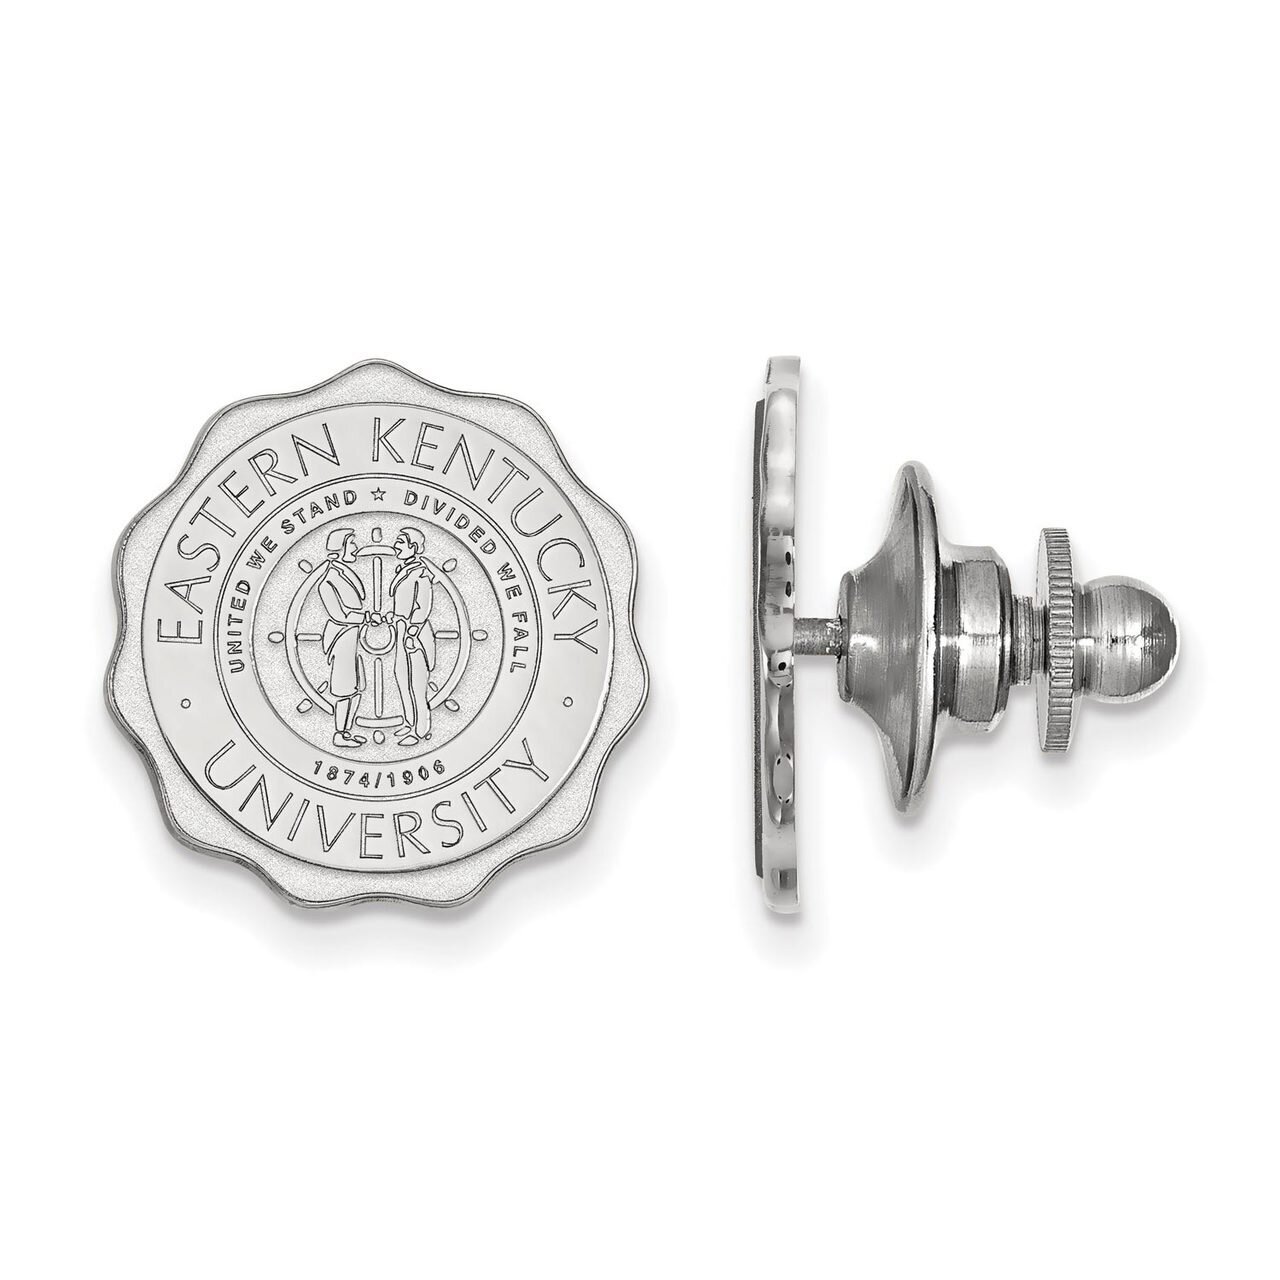 Eastern Kentucky University Crest Lapel Pin Sterling Silver SS017EKU